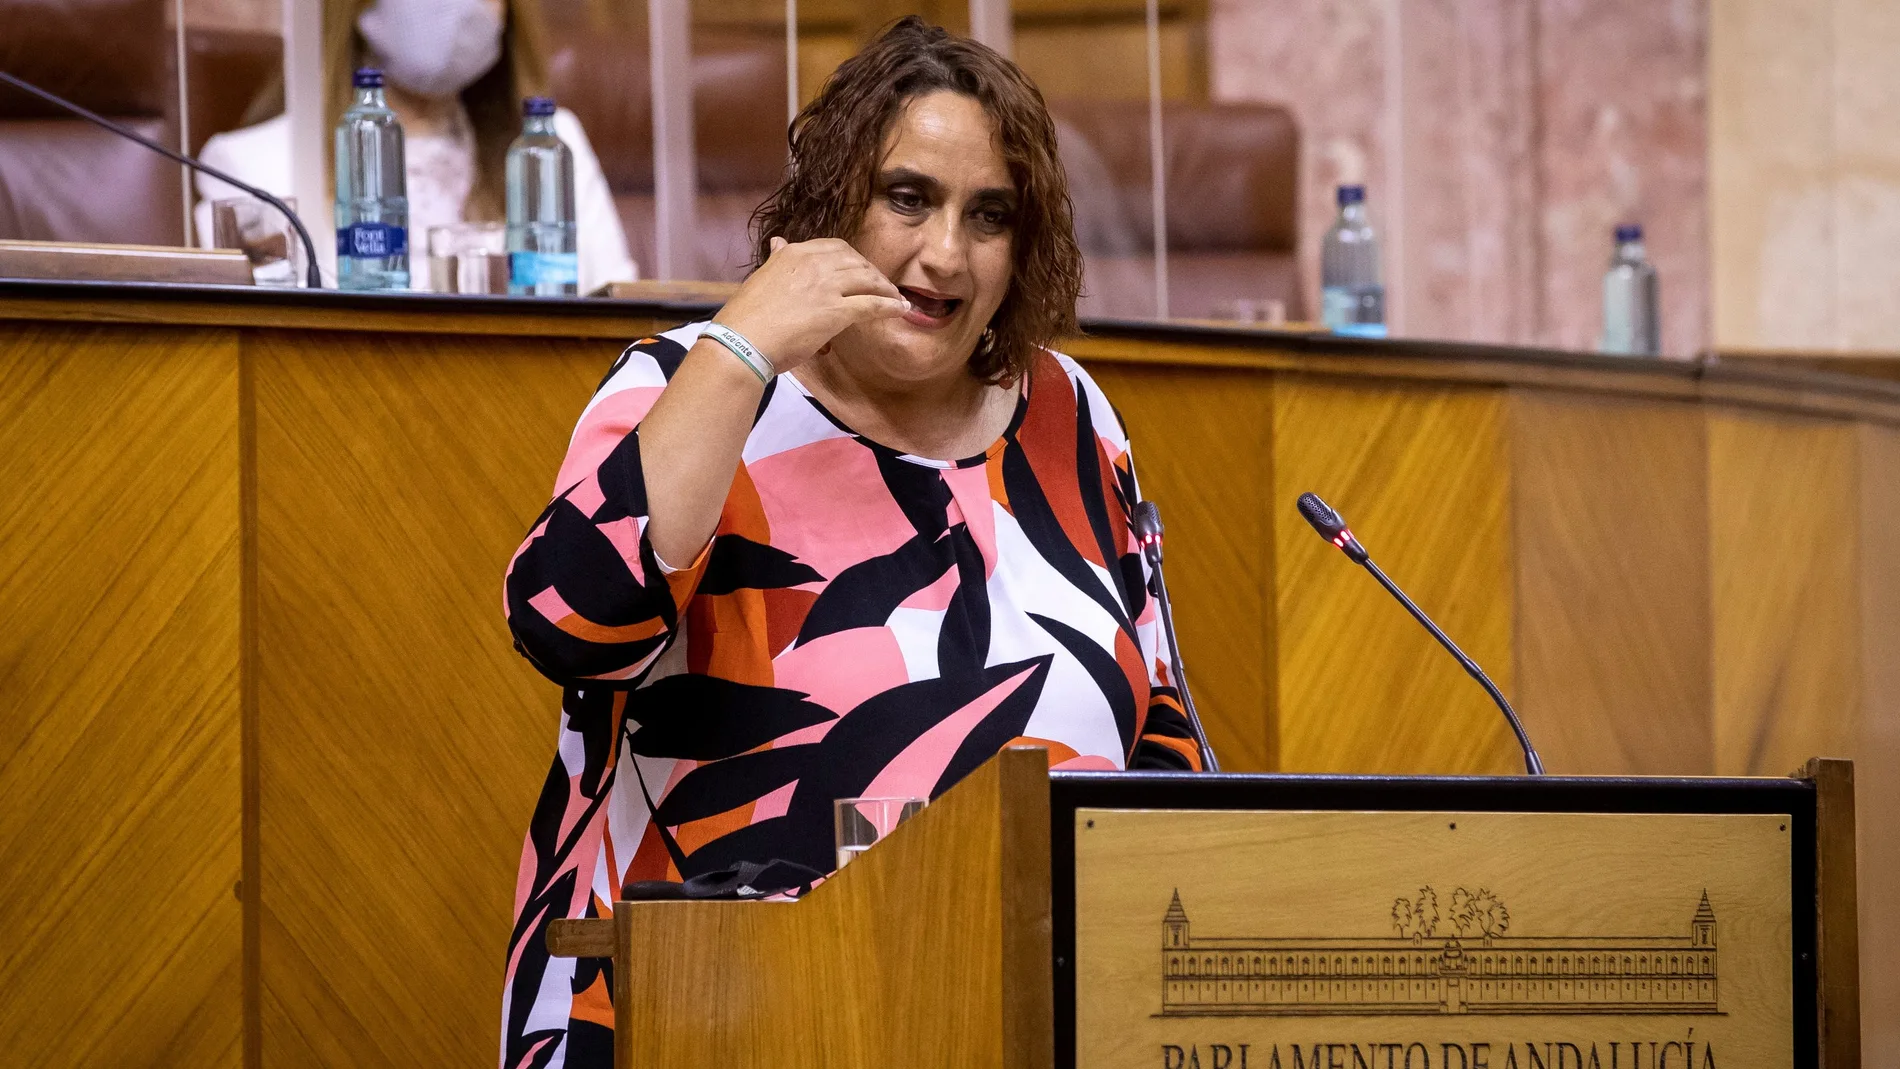 La portavoz del grupo parlamentario de Adelante Andalucía, Ángela Aguilera, durante su intervención en el Parlamento andaluz